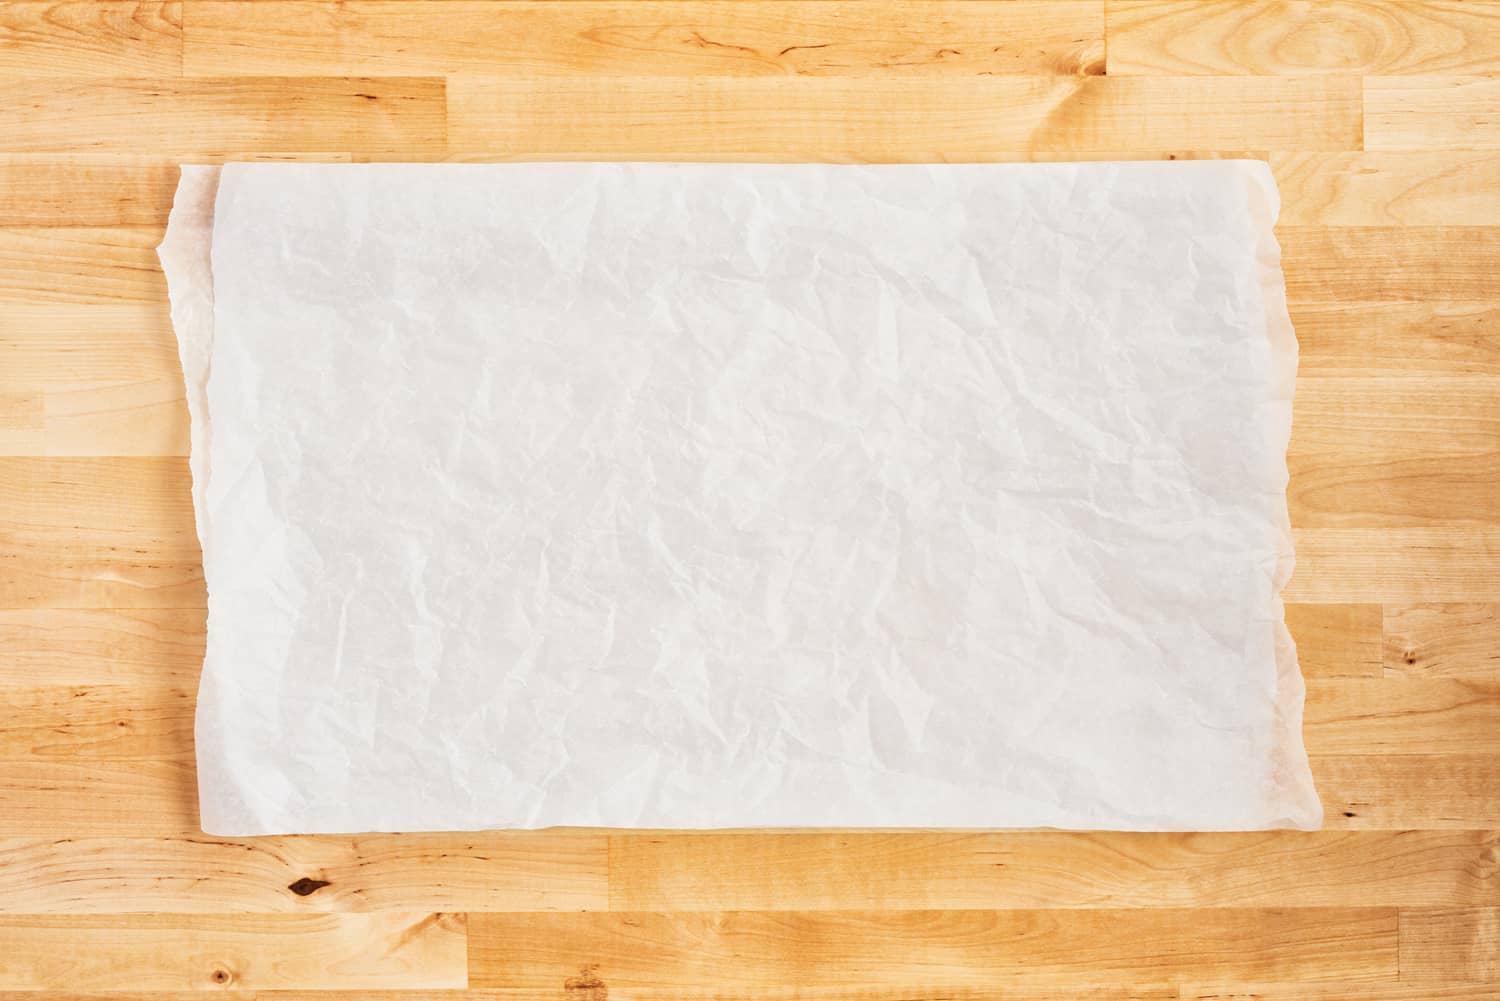 将揉皱的白色羊皮纸或烤纸放在木桌上。前视图。